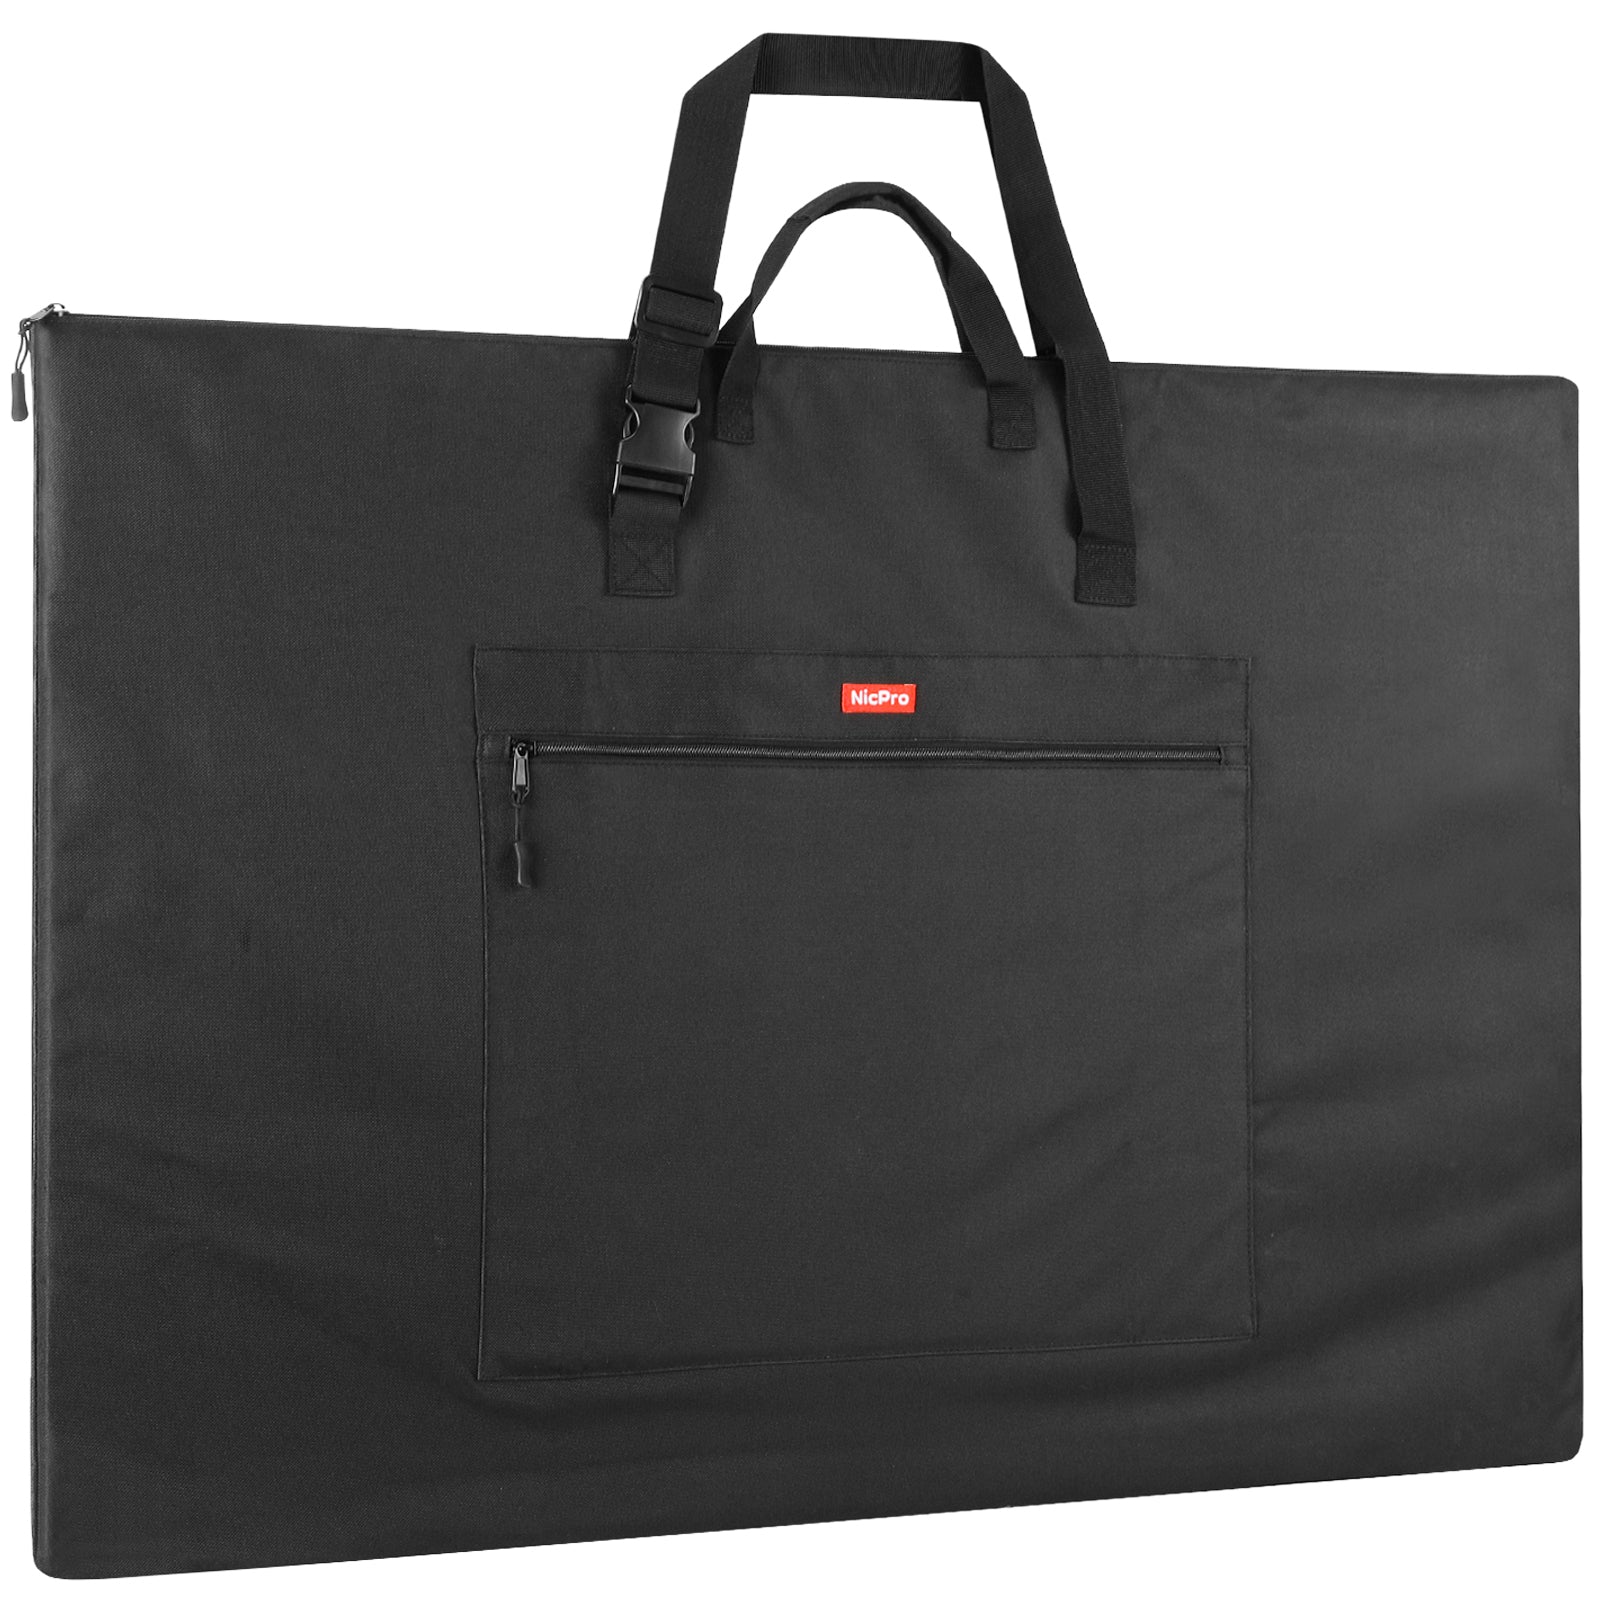 Portfolio Bag w/ Organizer & Key Holder - Expands 7